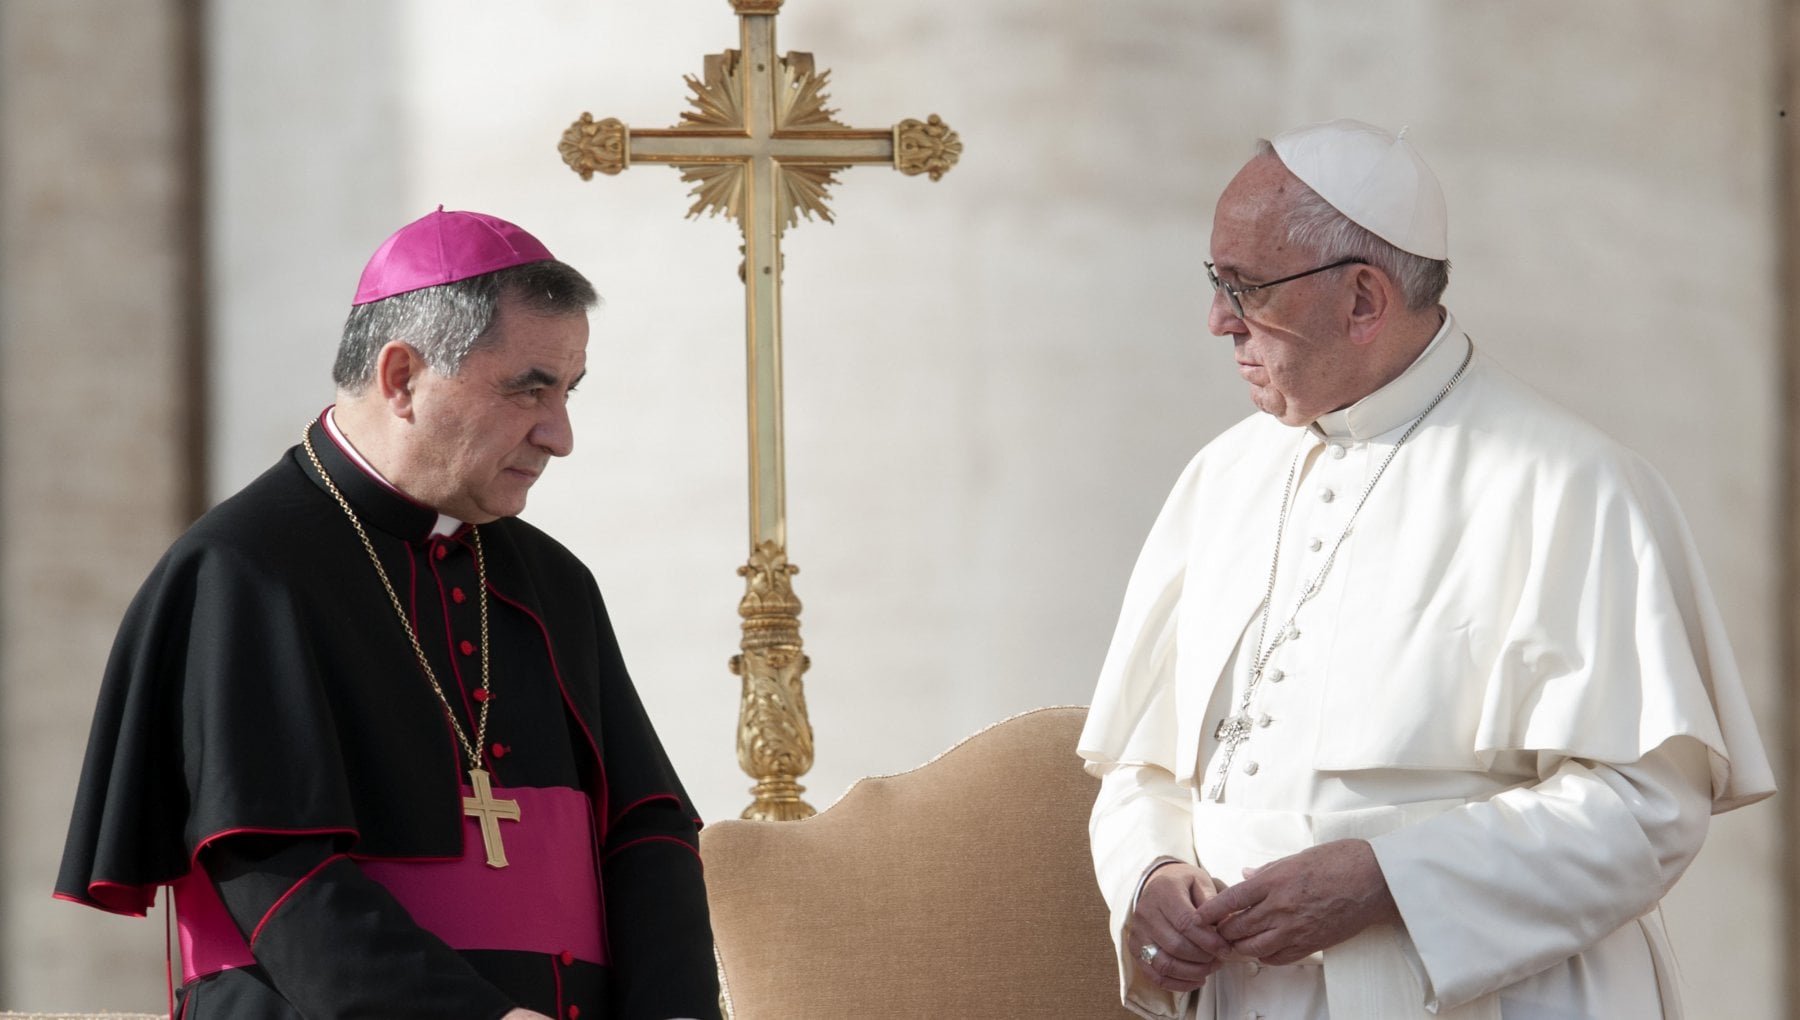 Le chat del Cardinale Becciu contro il Papa: "Vuole la mia morte. Dan Brown? La realtà supera la fantasia..."